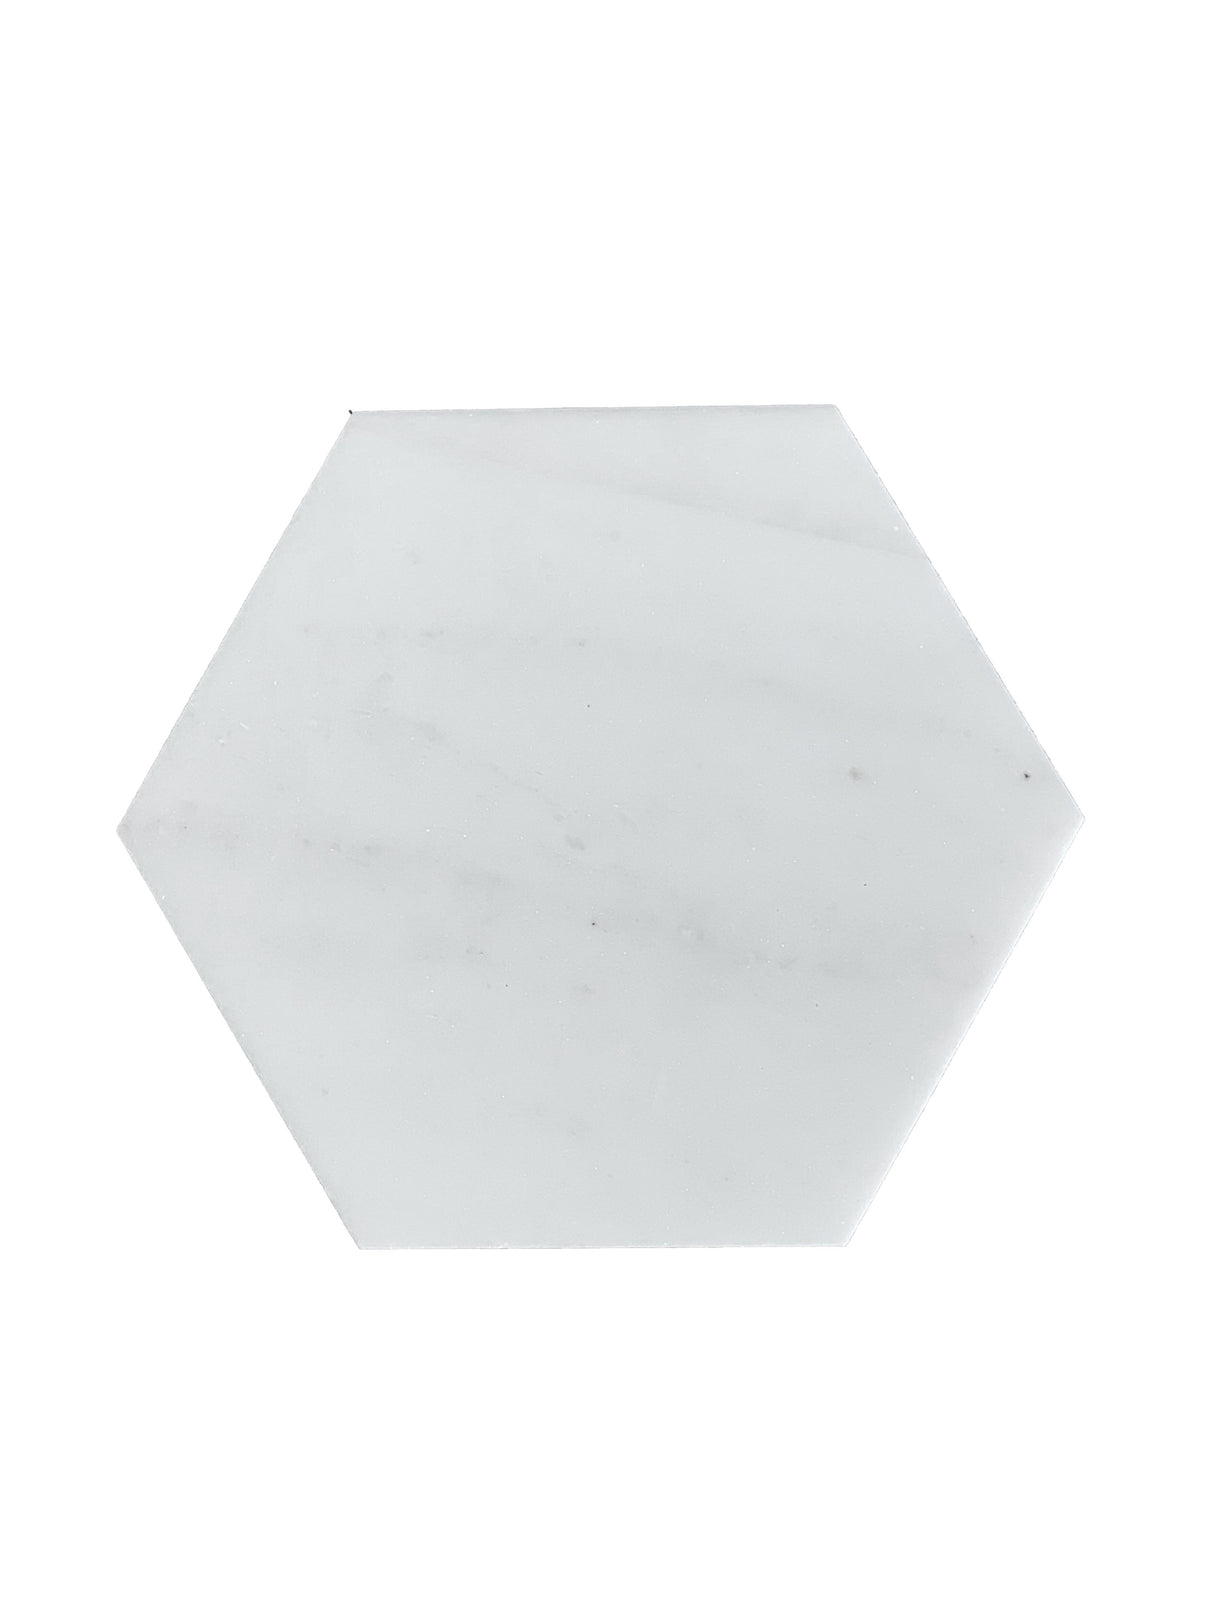 6x6 Daphne White Honed Hexagon Tile